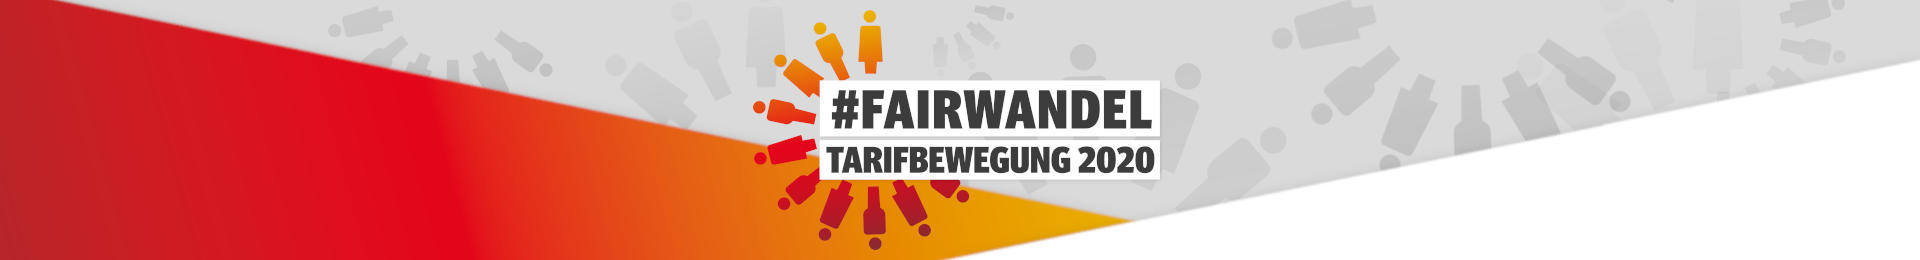 Tarifbewegung 2020: #FAIRWANDEL